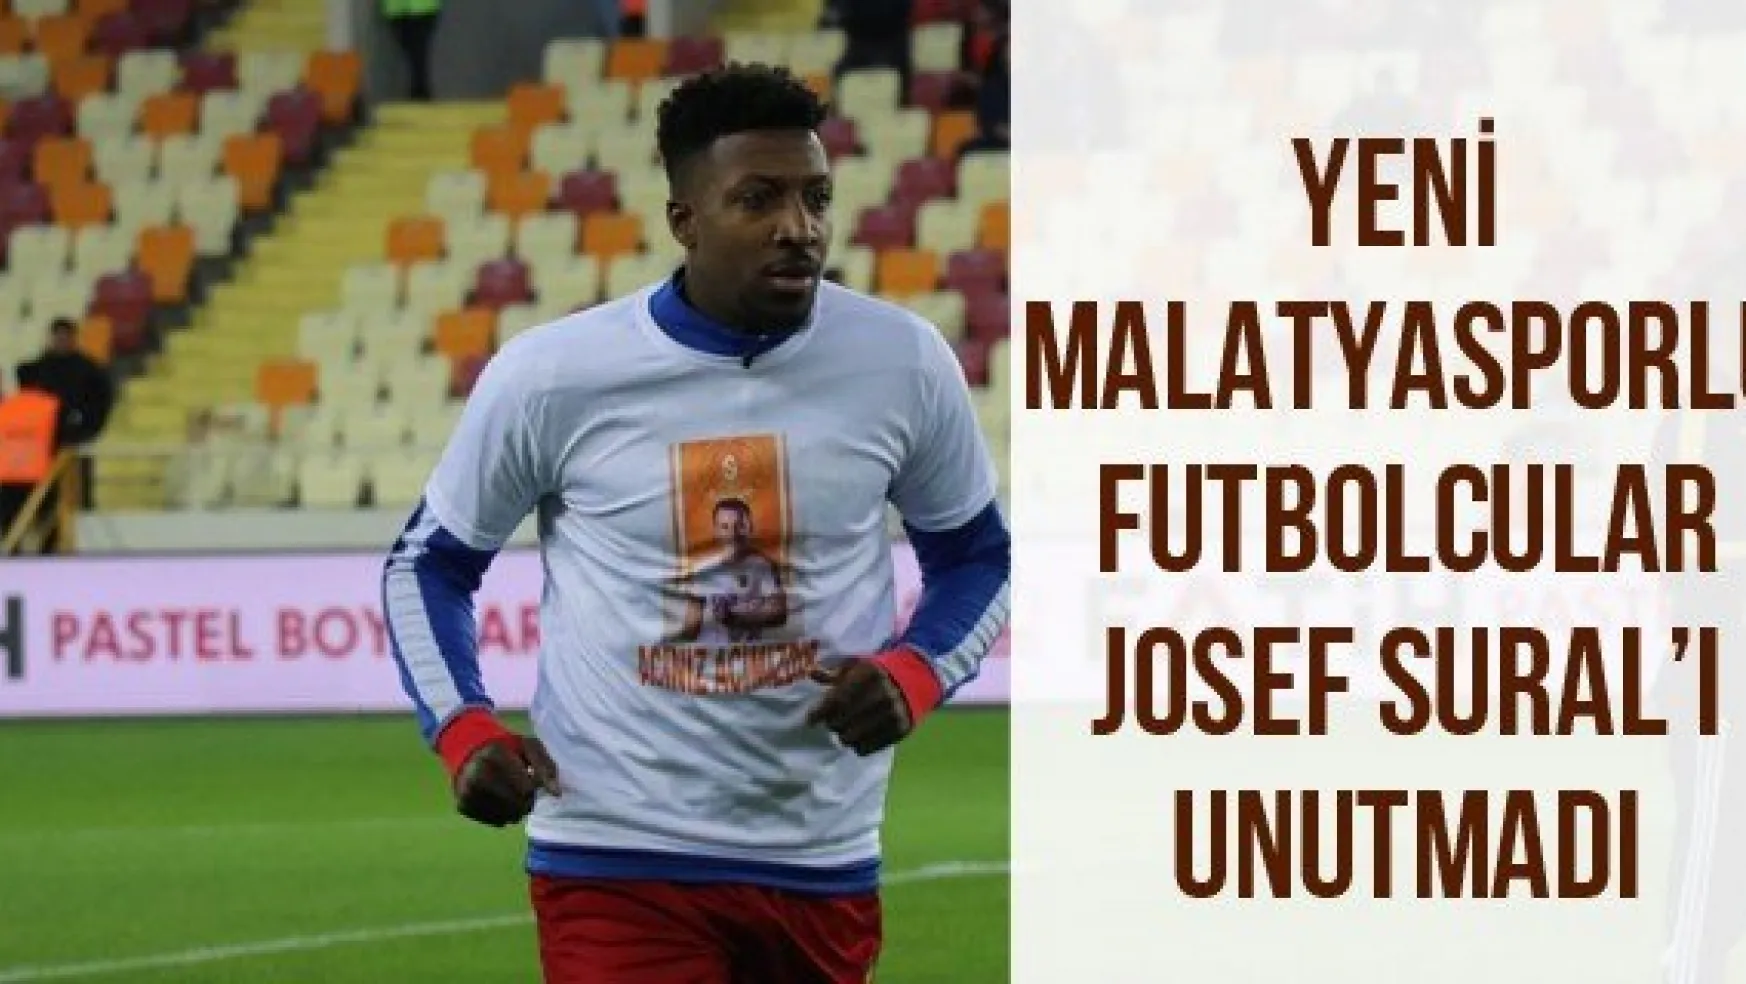 Yeni Malatyasporlu futbolcular Josef Sural'ı unutmadı